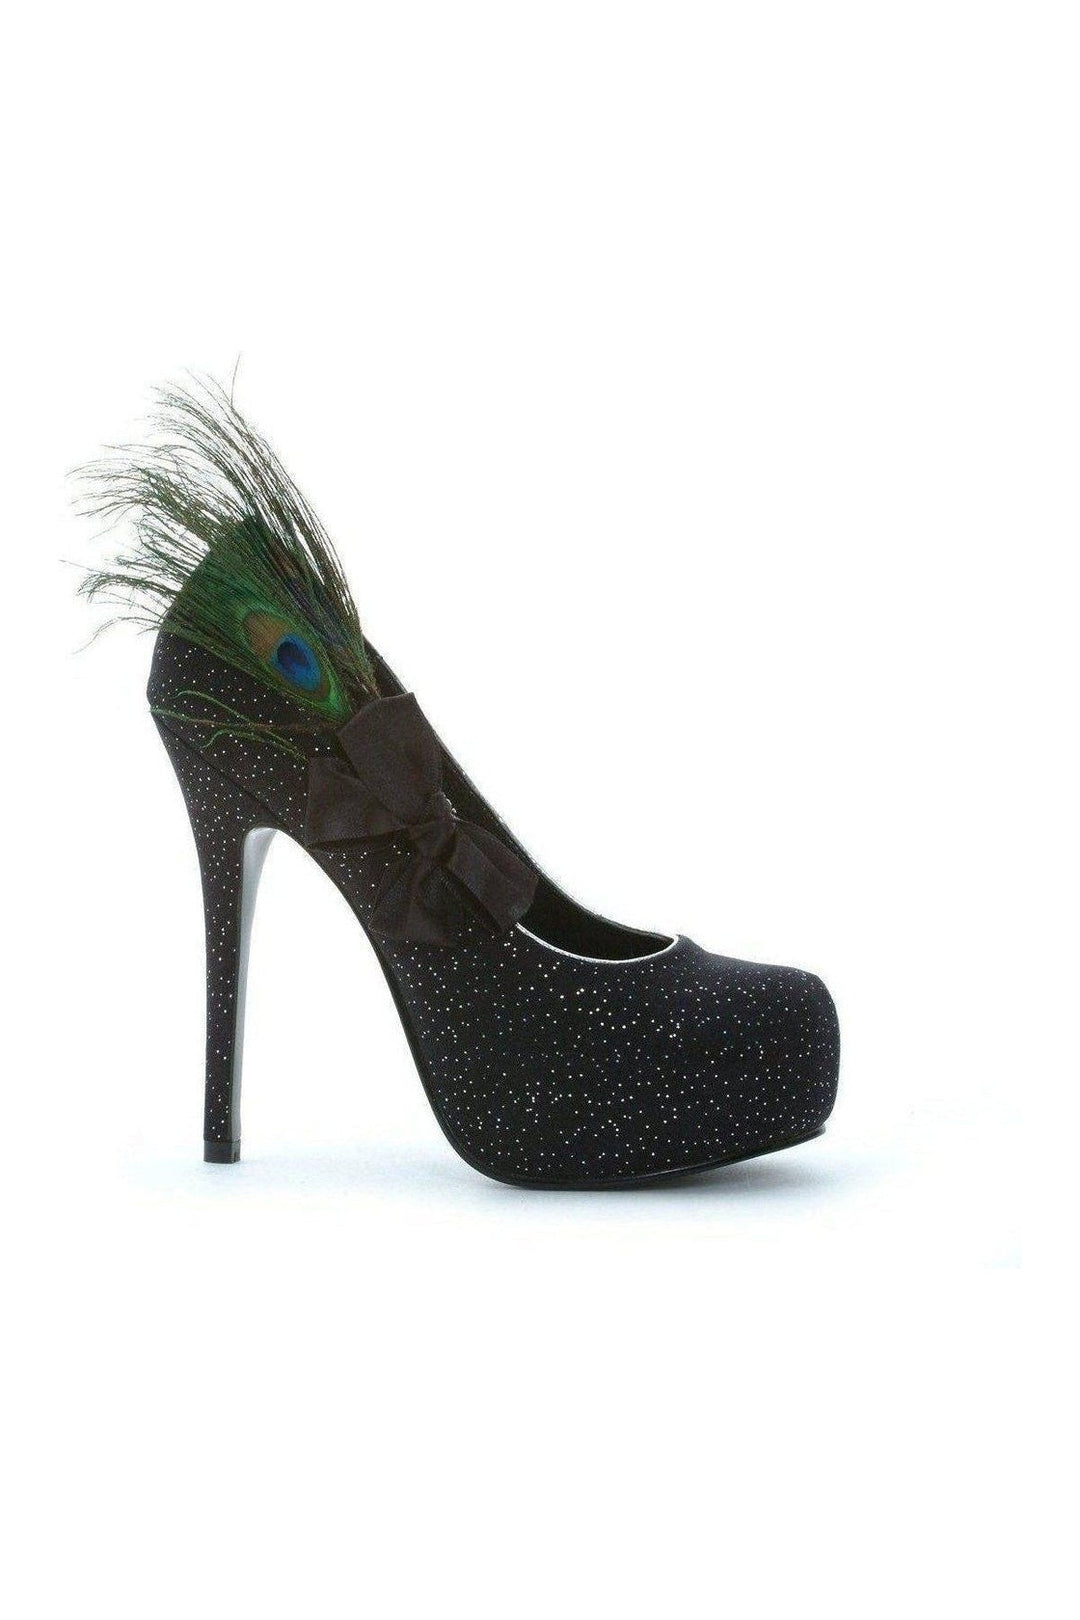 519-IRIDESCENCE Pump | Black Patent-Ellie Shoes-SEXYSHOES.COM